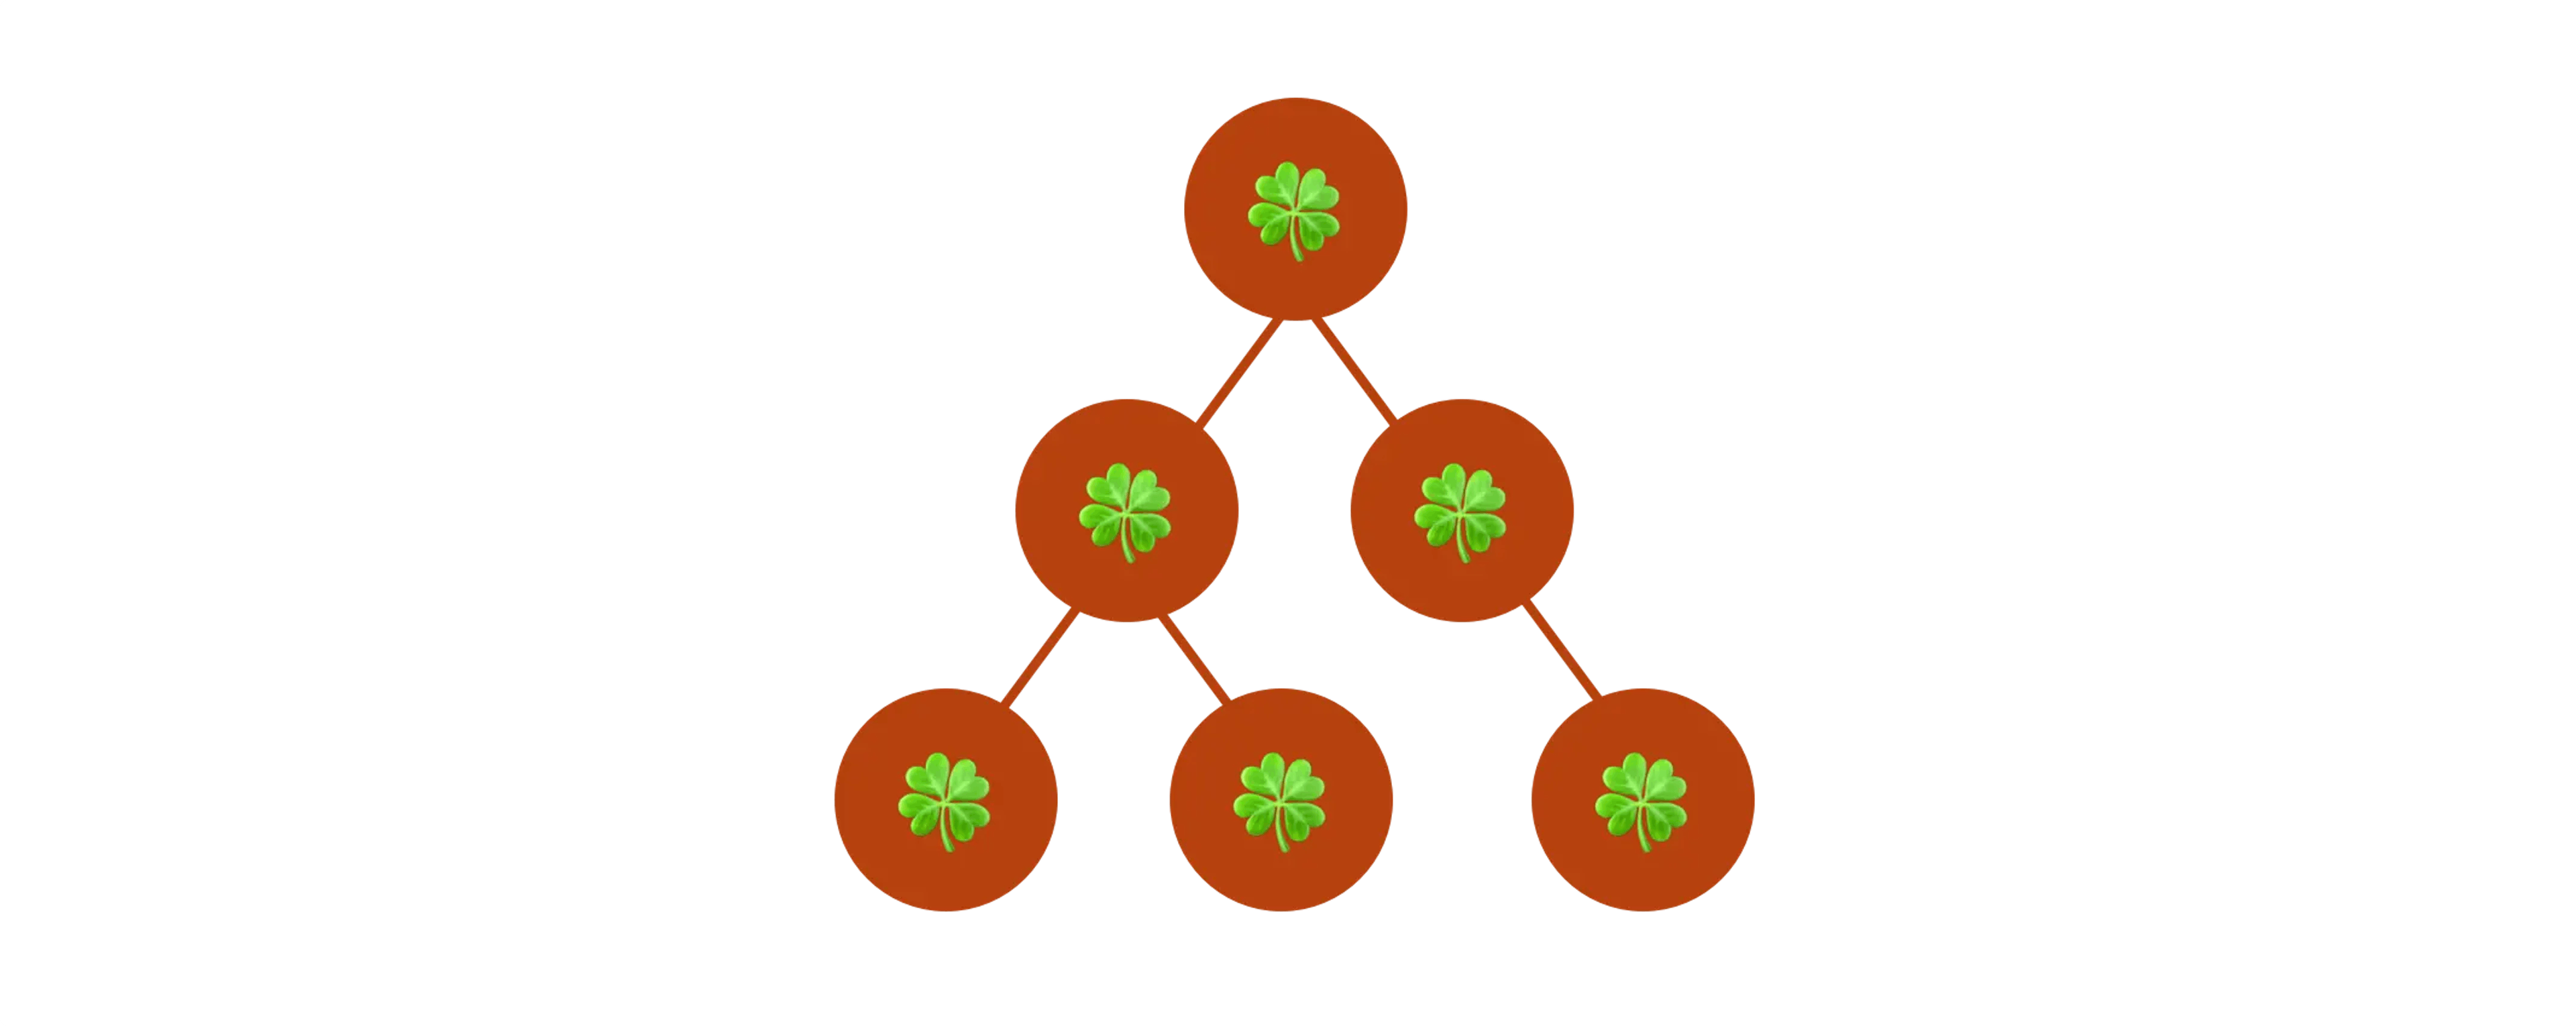 Visualización de estructura de datos de árbol binario